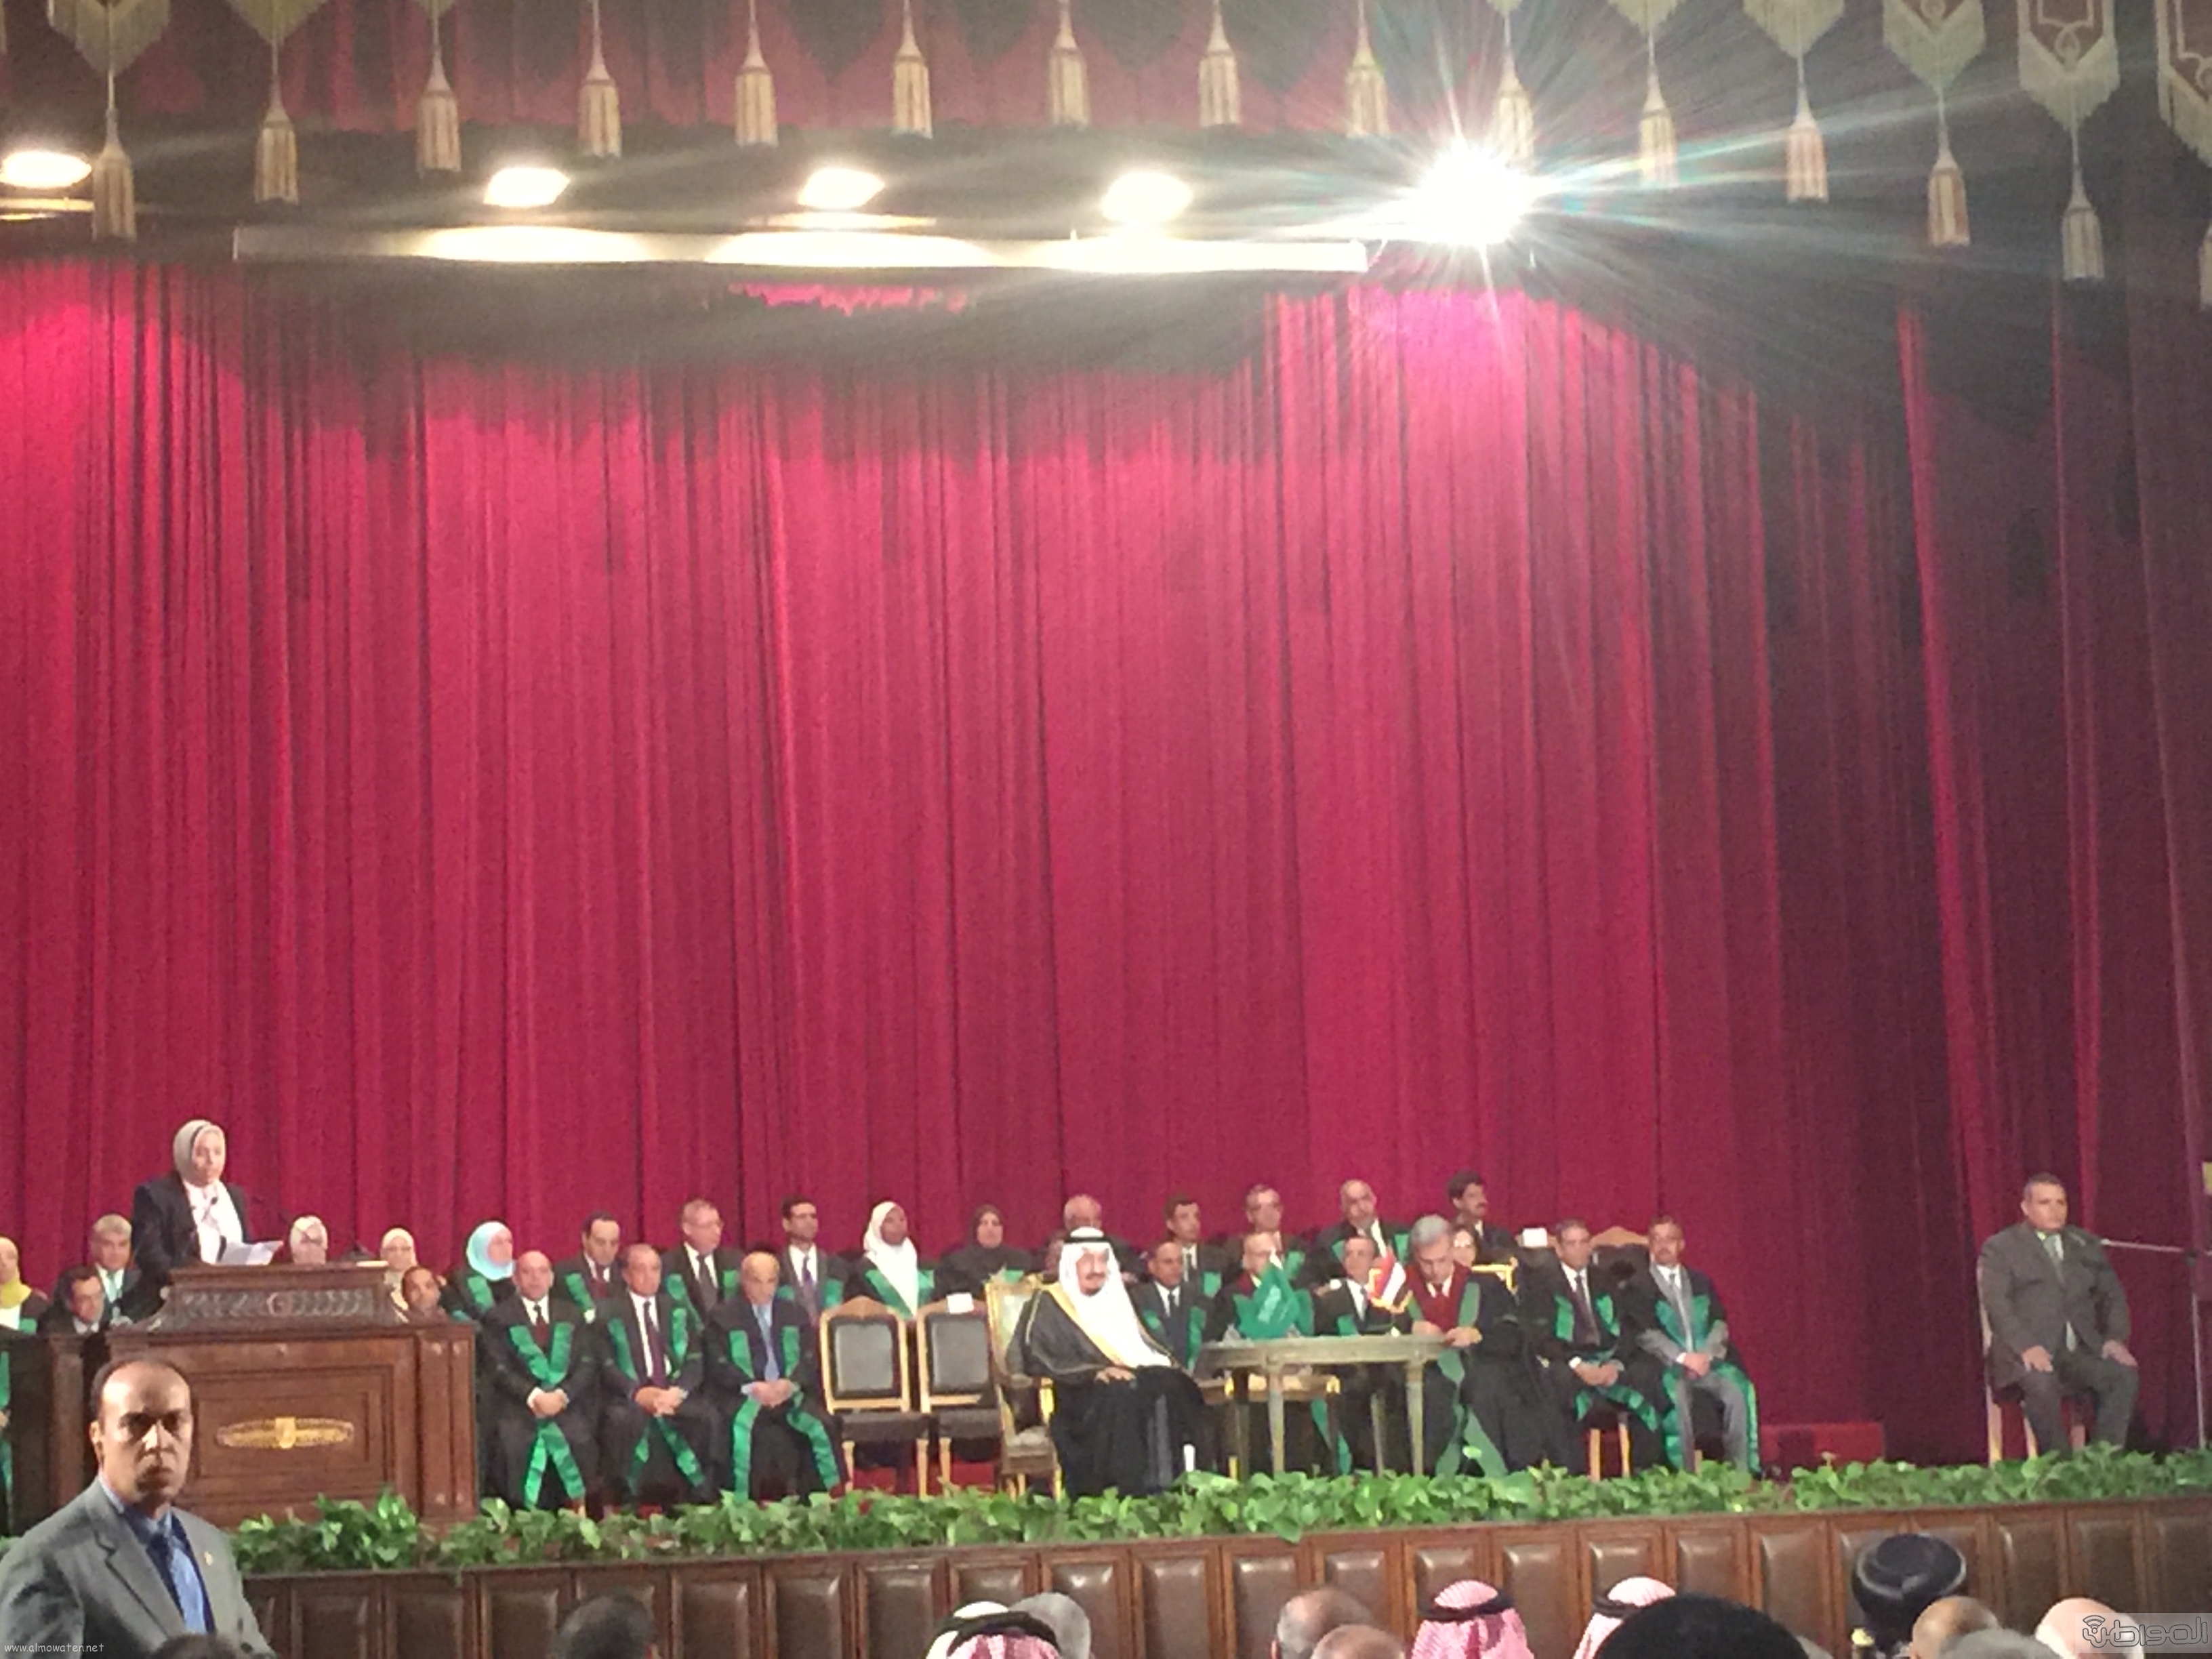 منح الملك سلمان الدكتوراه الفخرية من جامعة القاهرة (1)